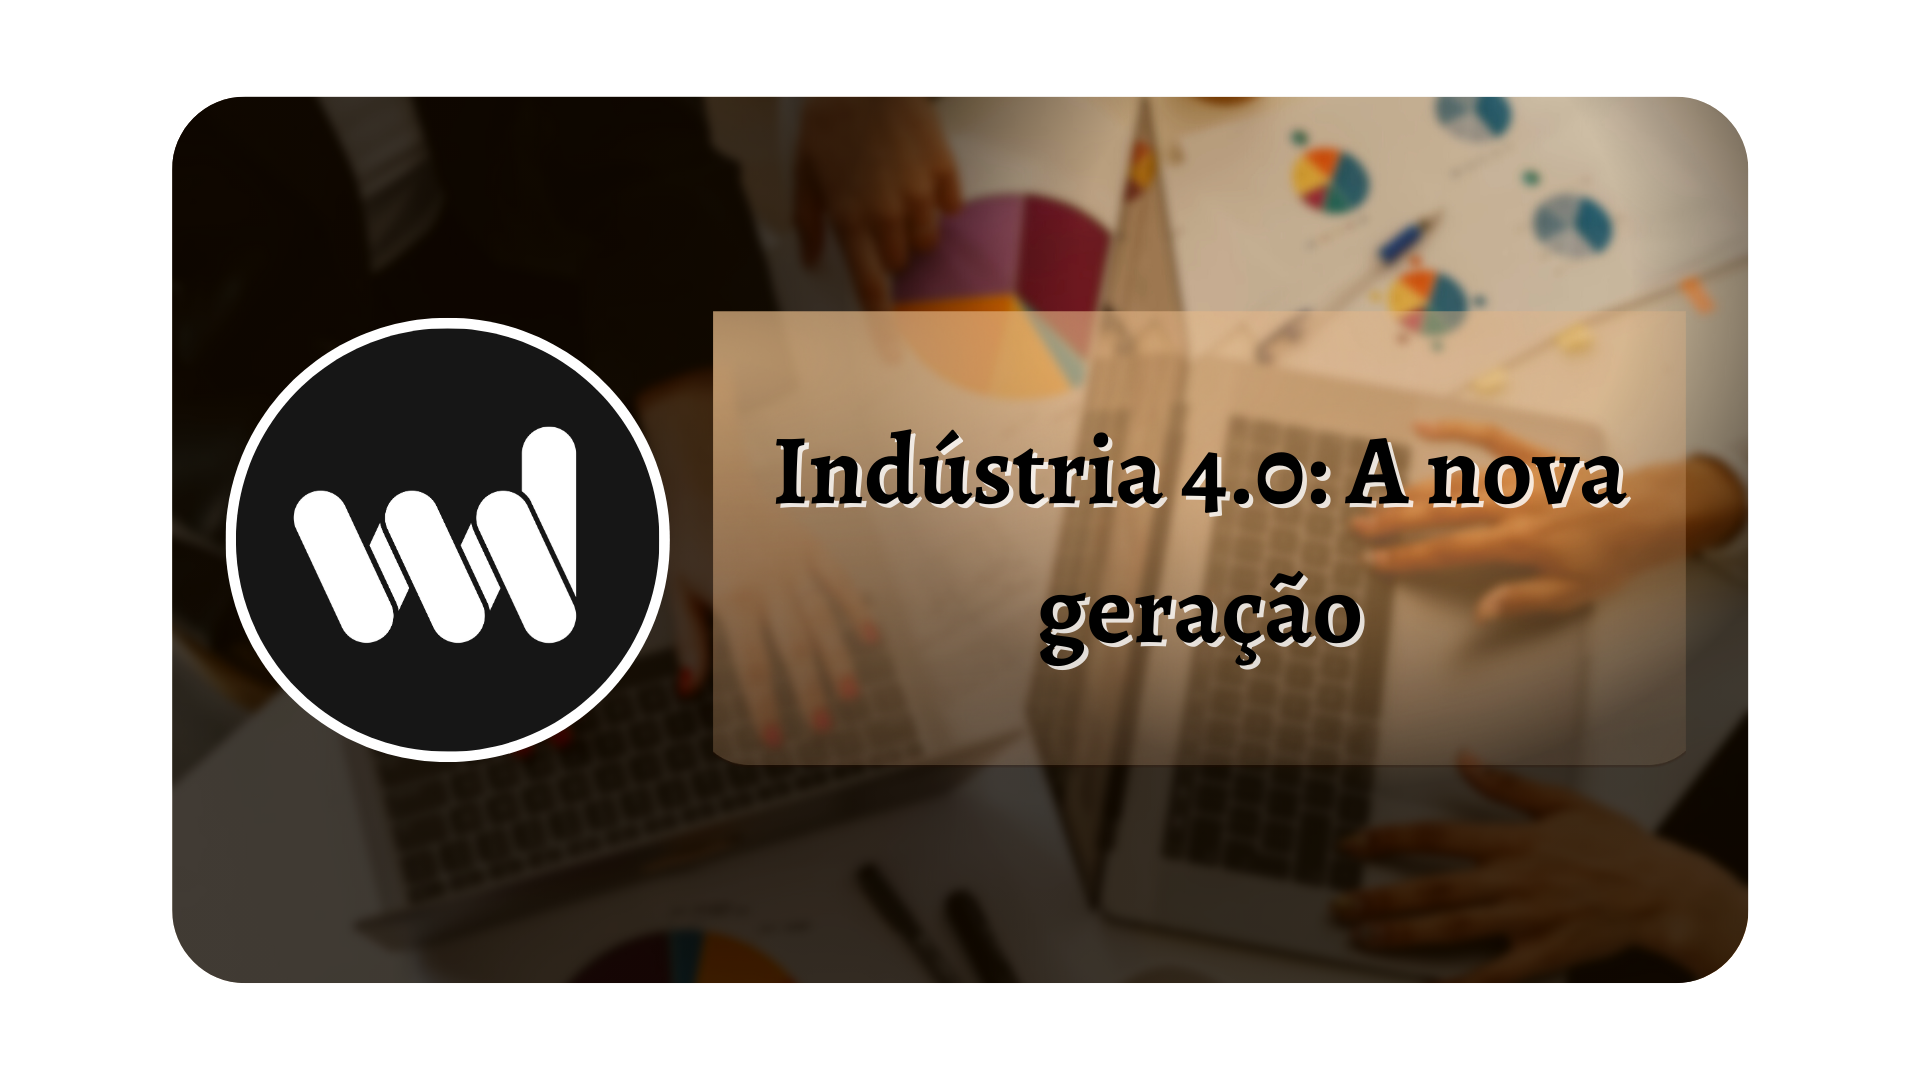 You are currently viewing Indústria 4.0: A nova geração